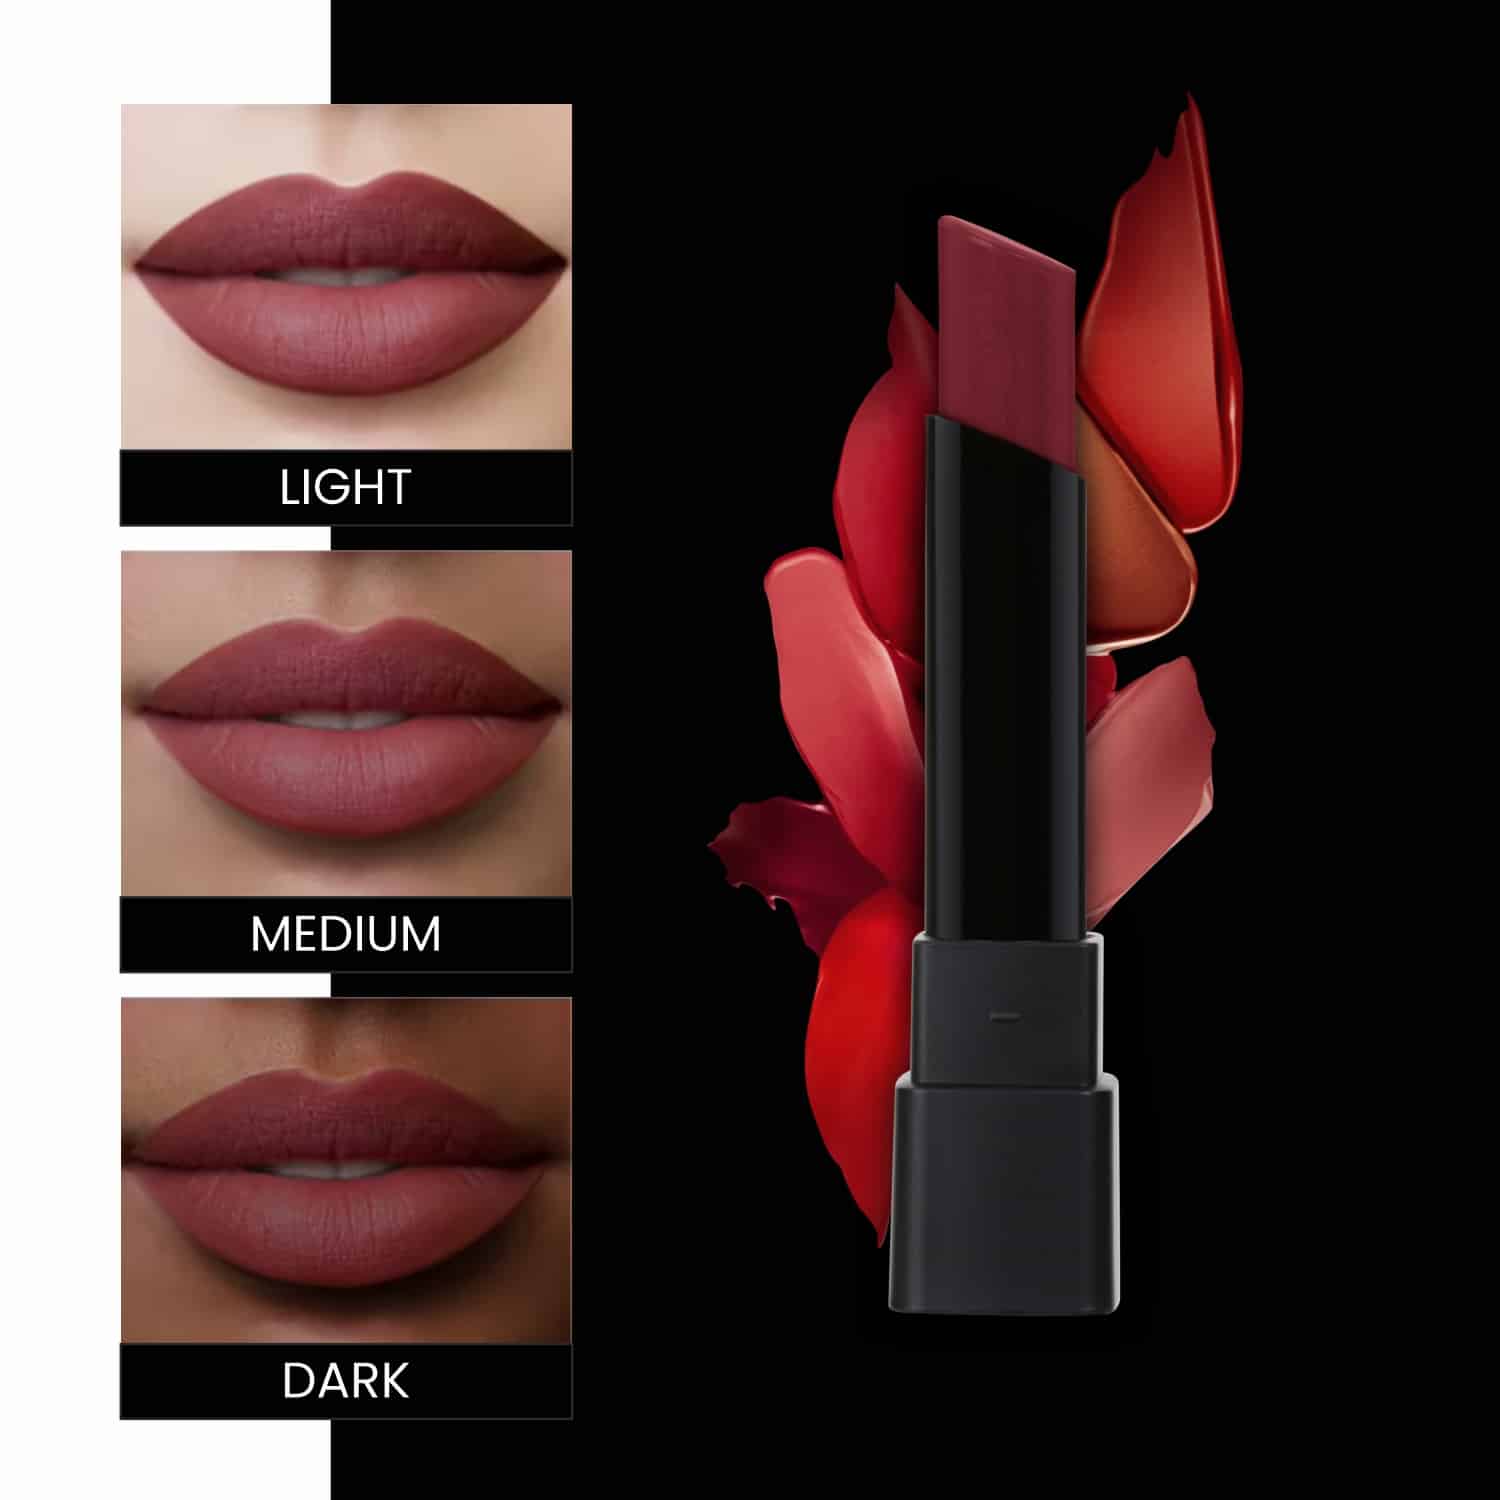 Ultra Rich Matte Lipstick - 319 Red Hot